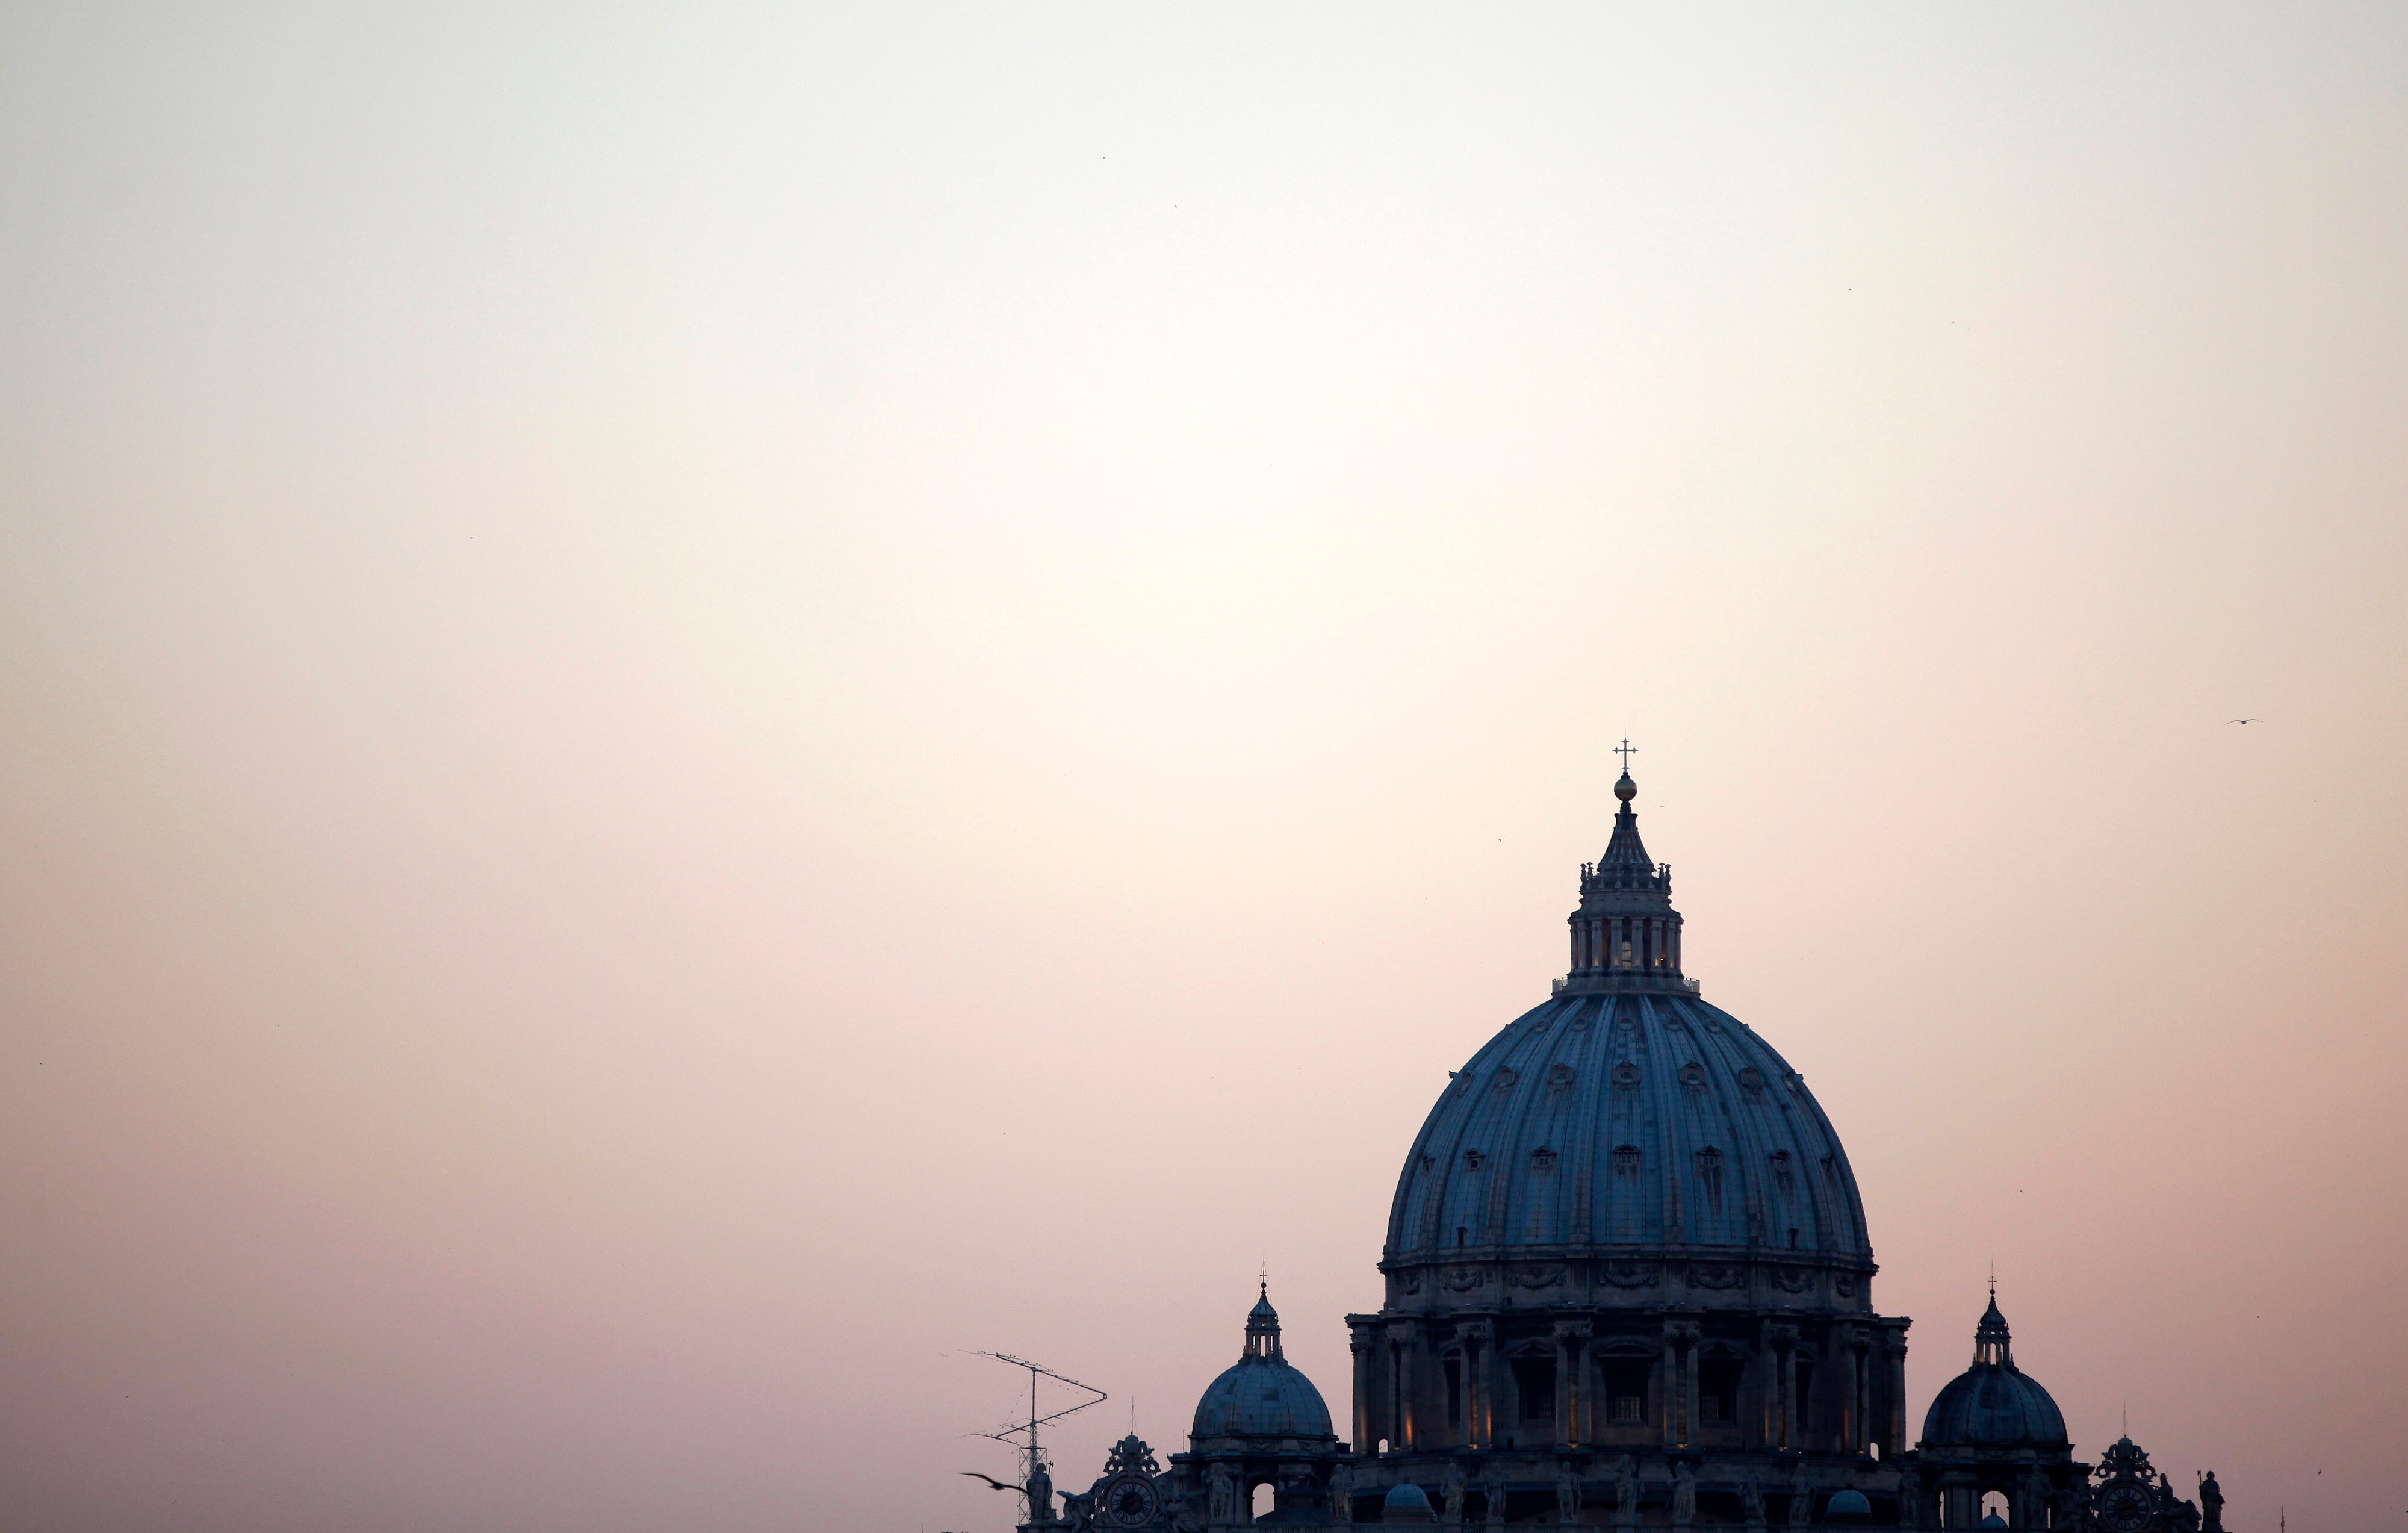 How effective was Cardinal Pell's work in Vatican finances?